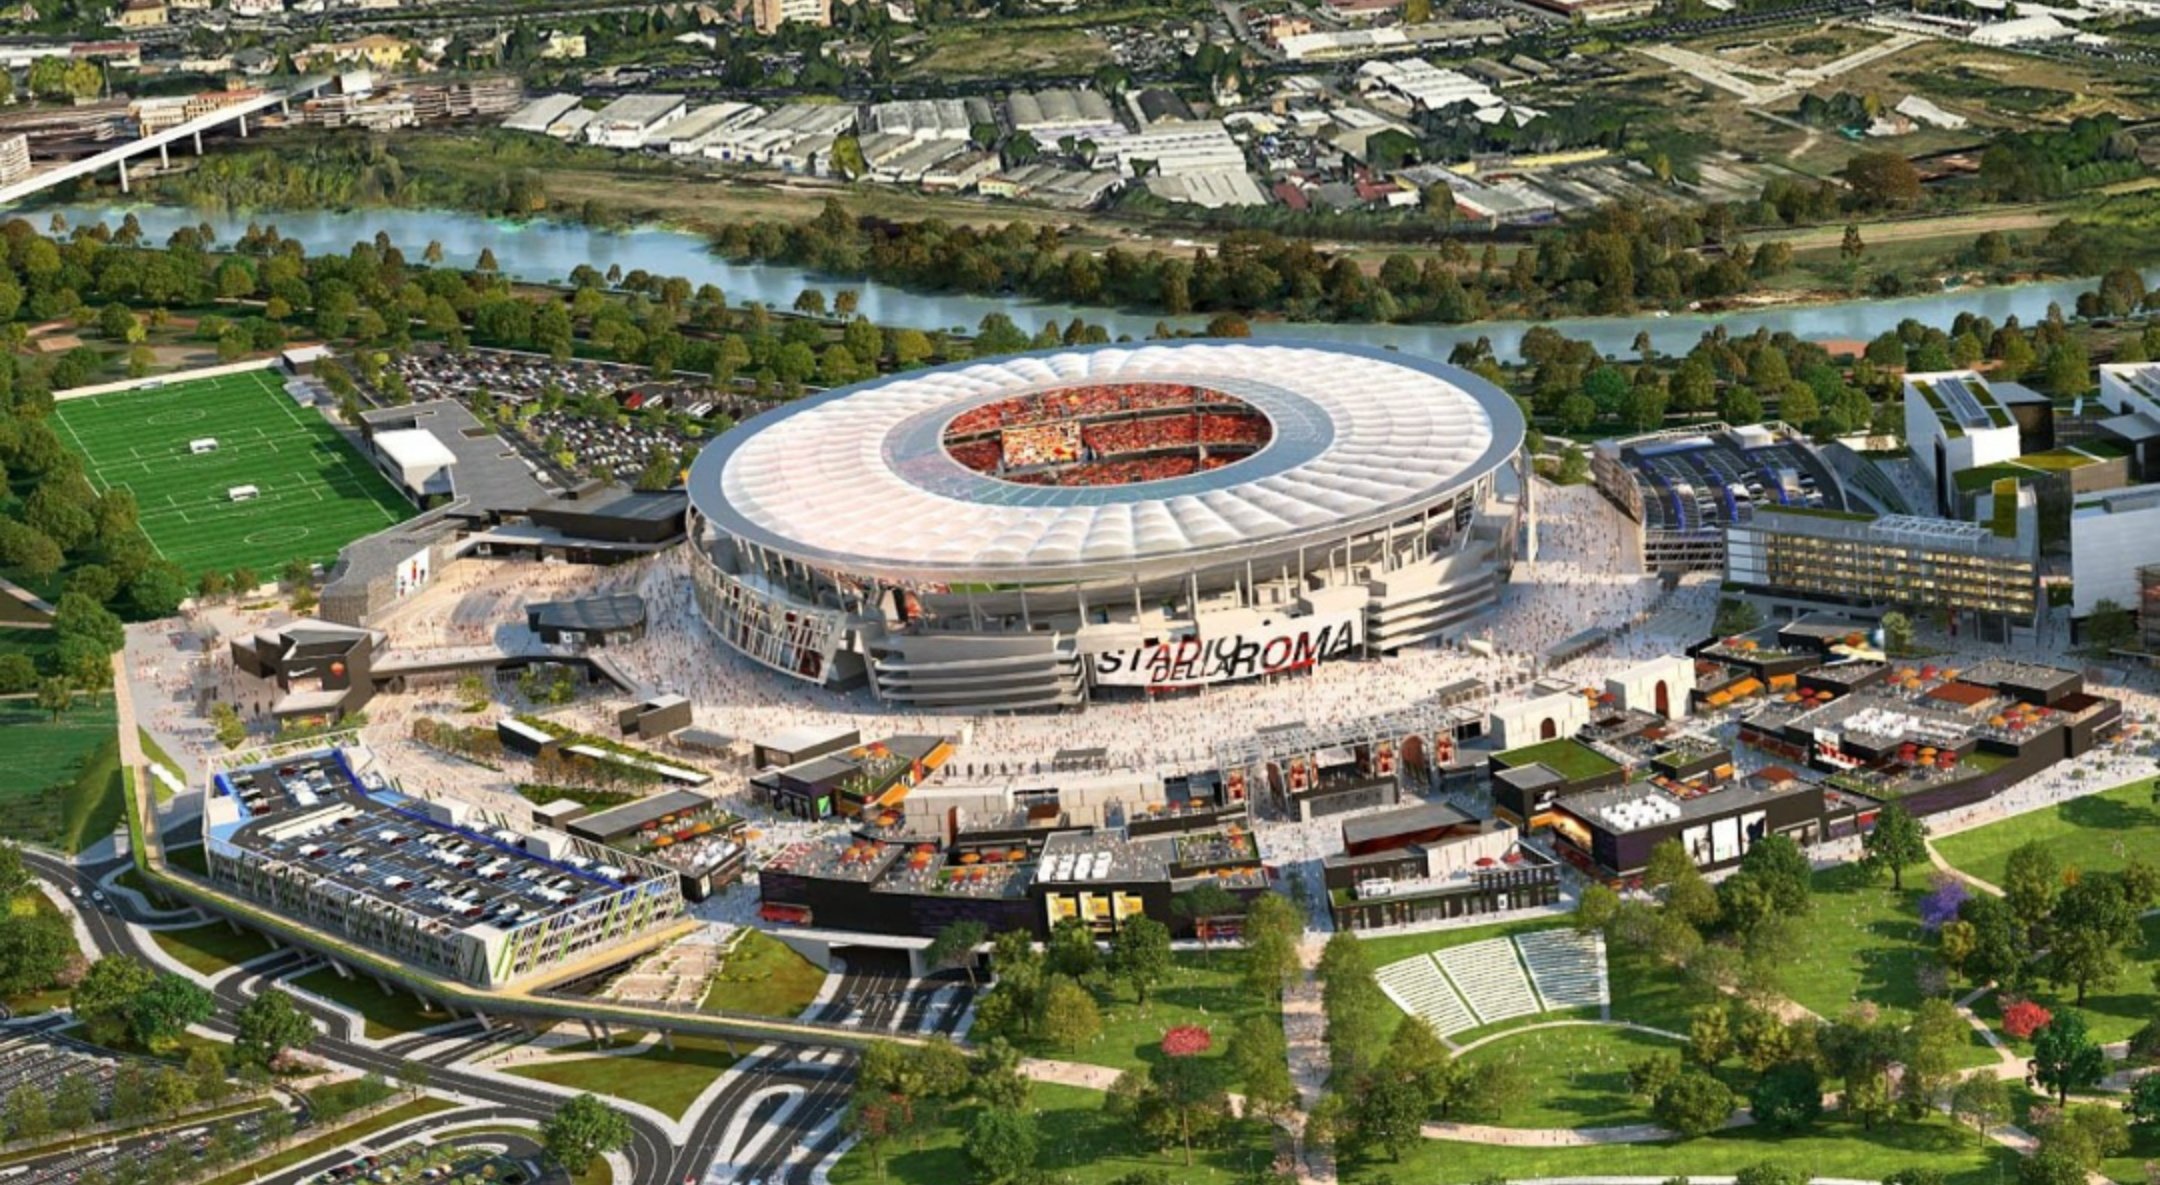 𝐊𝐓 ローマ新スタジアムの建設が承認されたし 今日はダブルで嬉しいな Asローマ T Co Crmultbfza Twitter